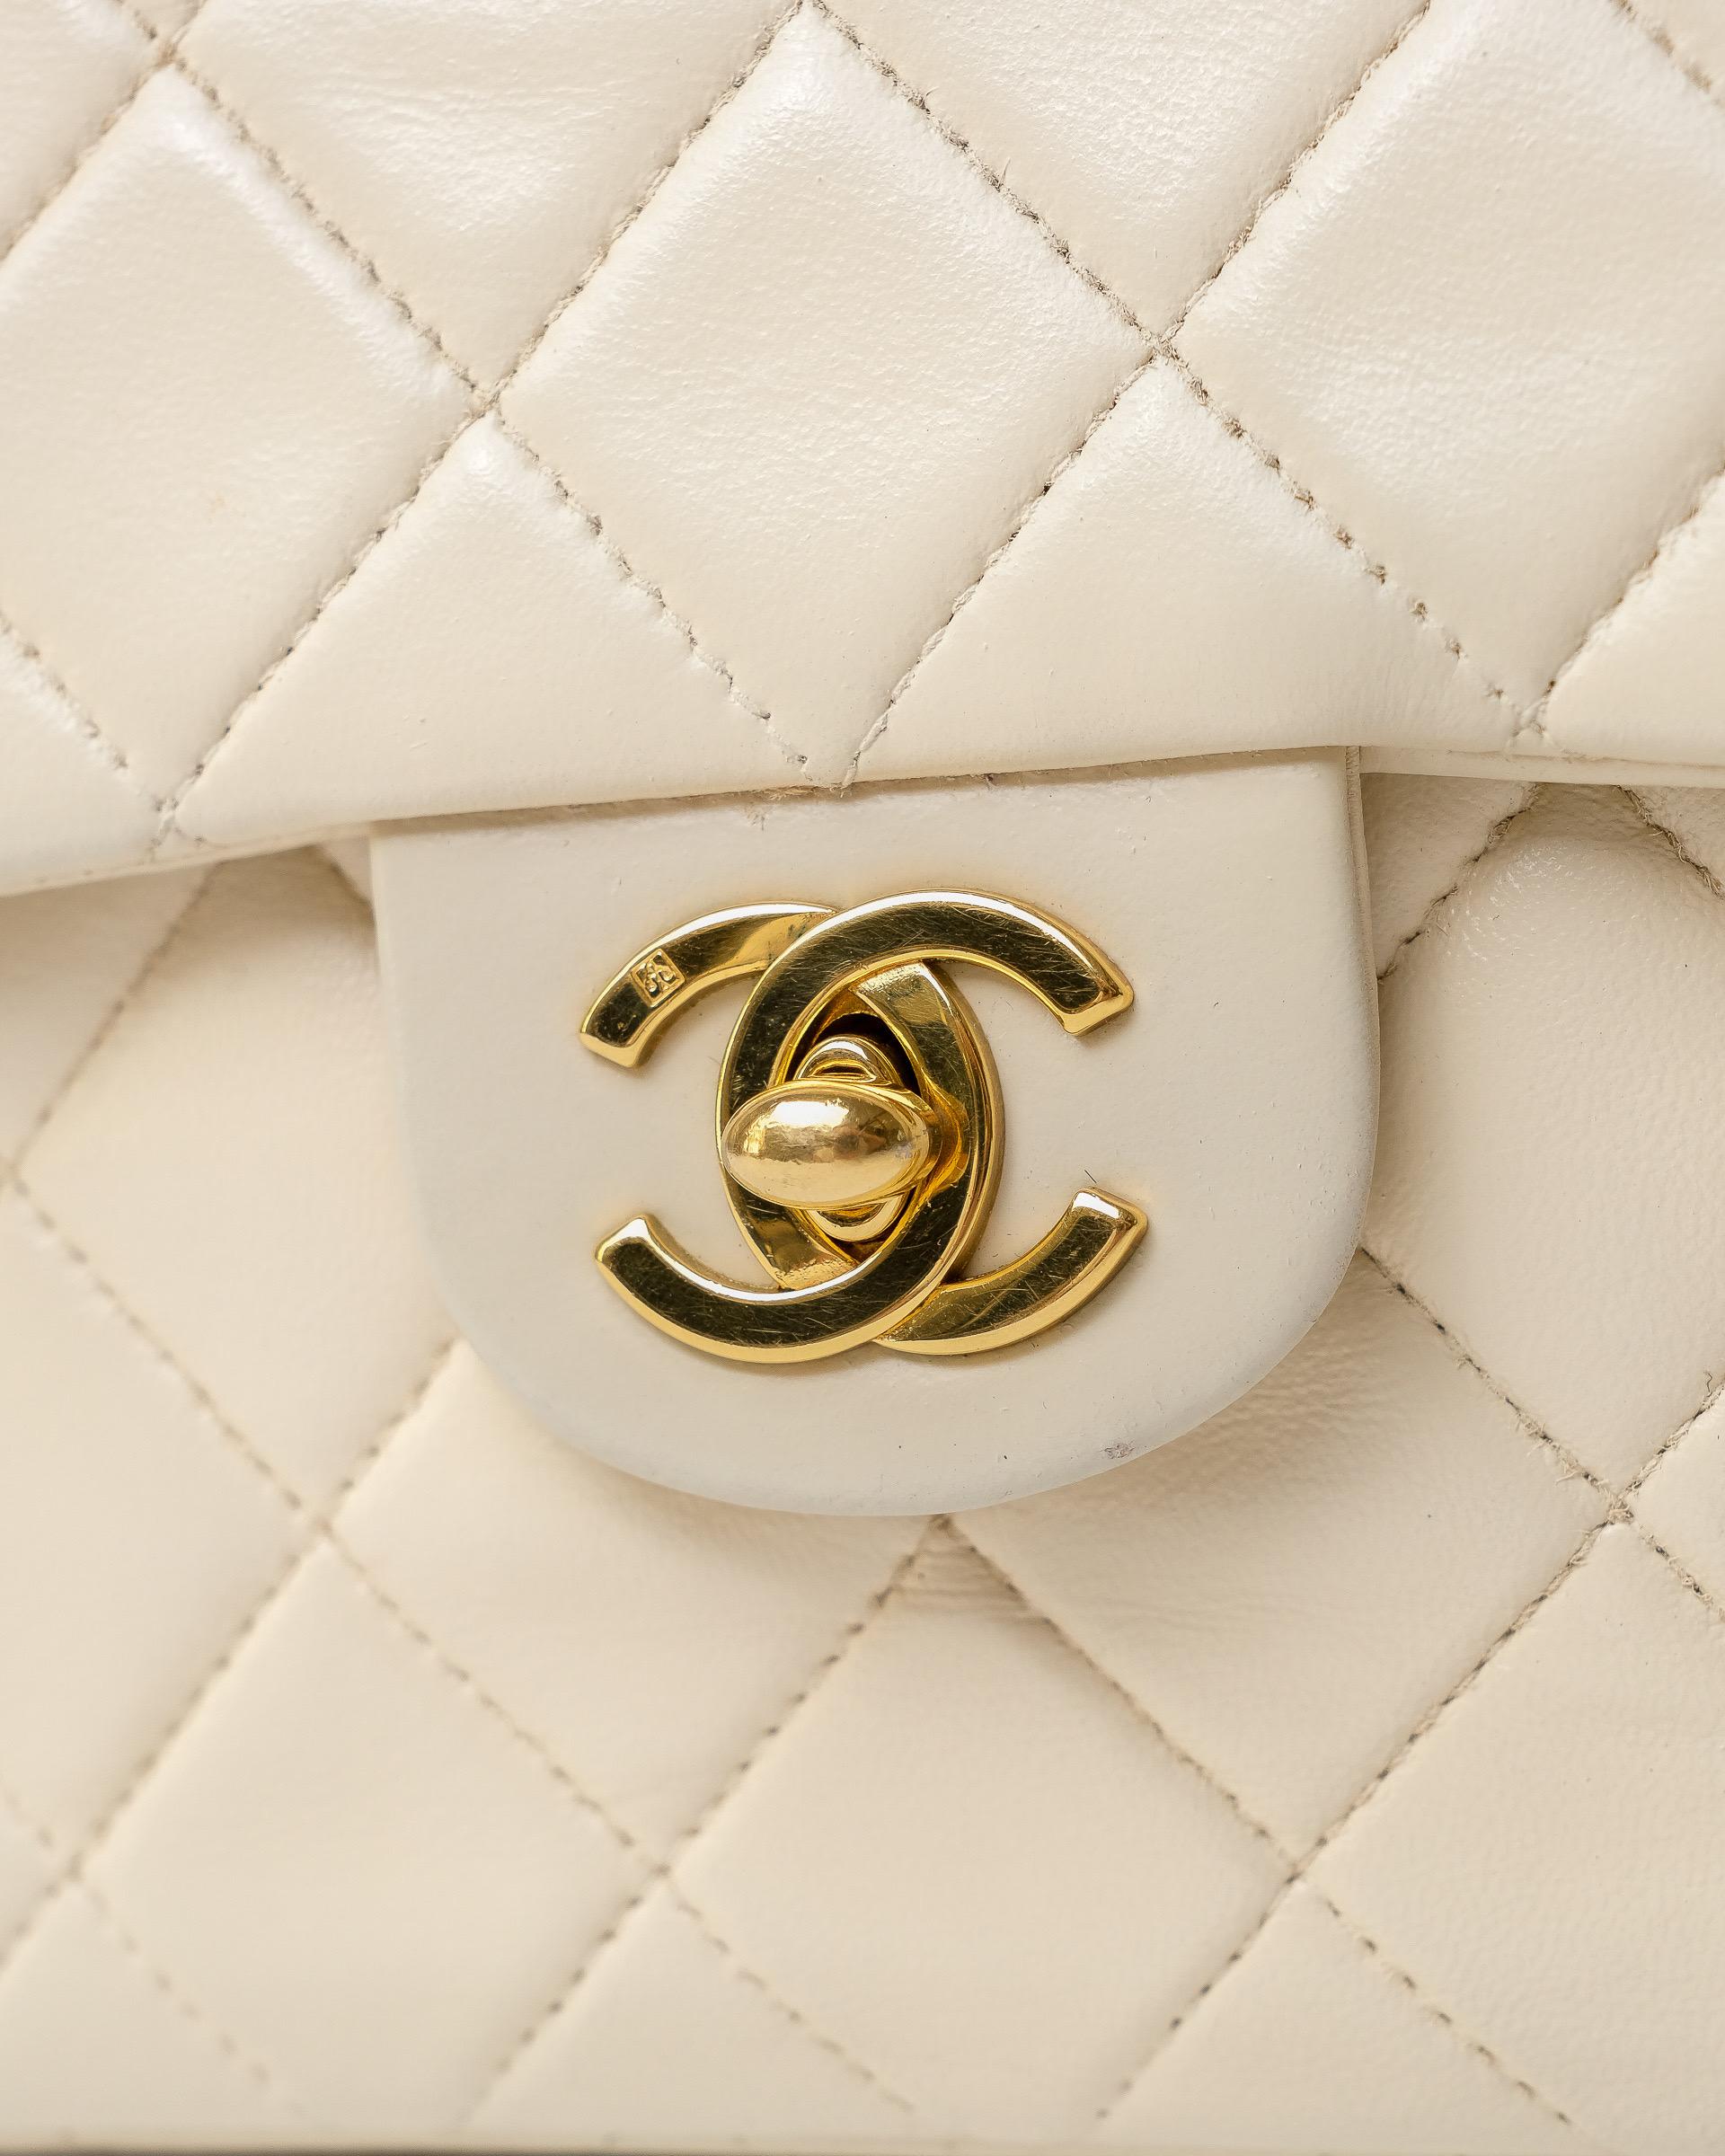 Borsa firmata Chanel, modello Timeless Mini Flap Vintage, realizzata in pelle liscia color crema con hardware dorati. Dotata di una patta con chiusura a girello logo CC, internamente rivestita in pelle liscia tono su tono, capiente per l’essenziale.